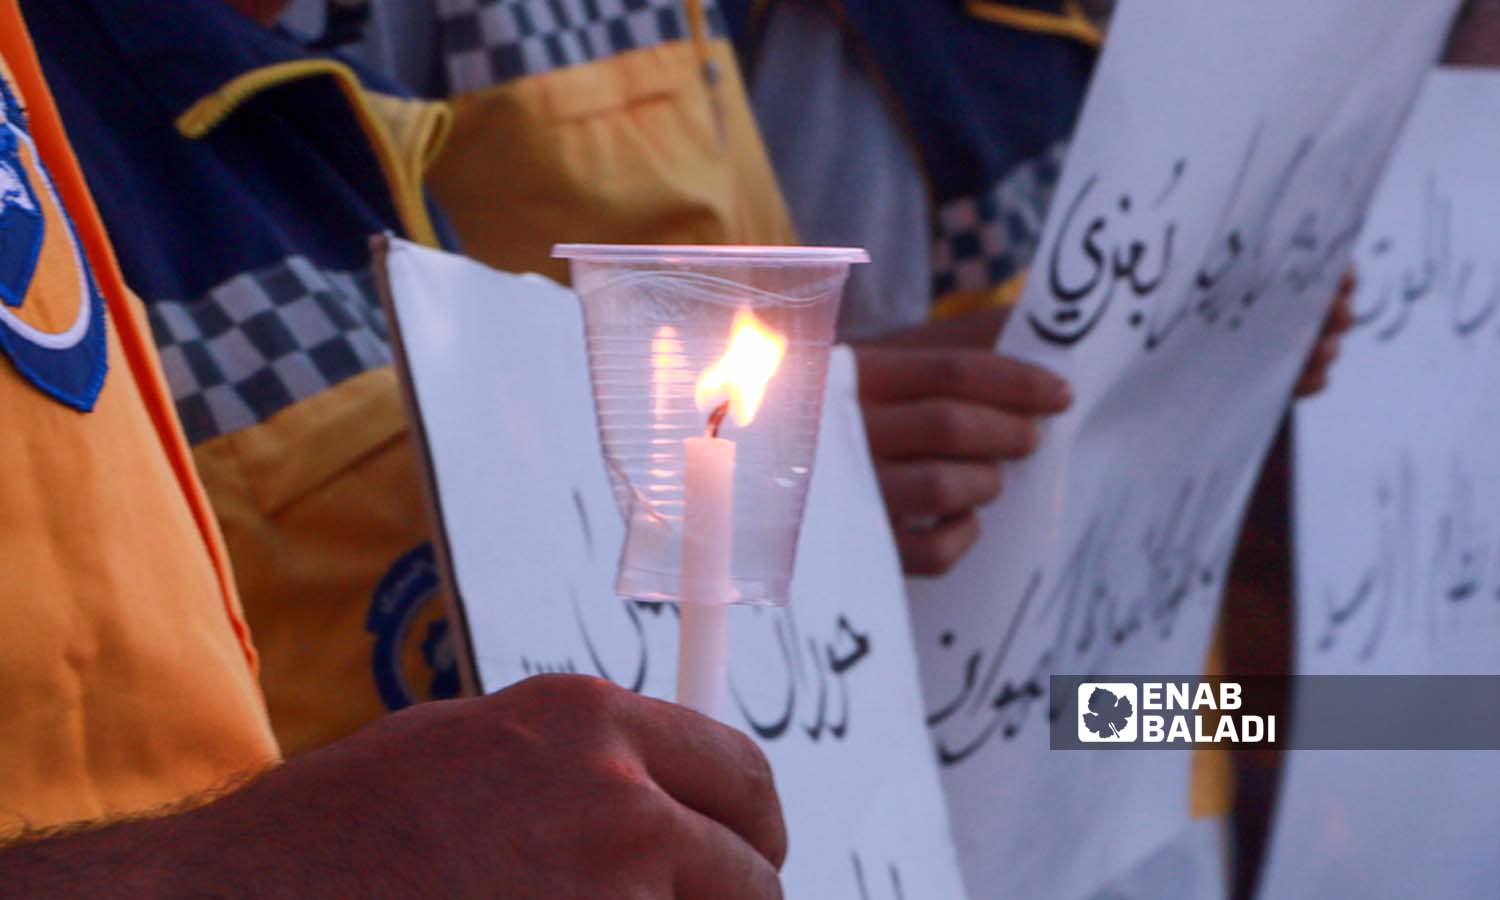  متطوعو الدفاع المدني السوري في مدينة إدلب يشعلون الشموع حداداً على أرواح الضحايا الذين غرقوا في قارب الموت على سواحل اليونان- 18 حزيران 2023 (عنب بلدي- أنس الخولي)